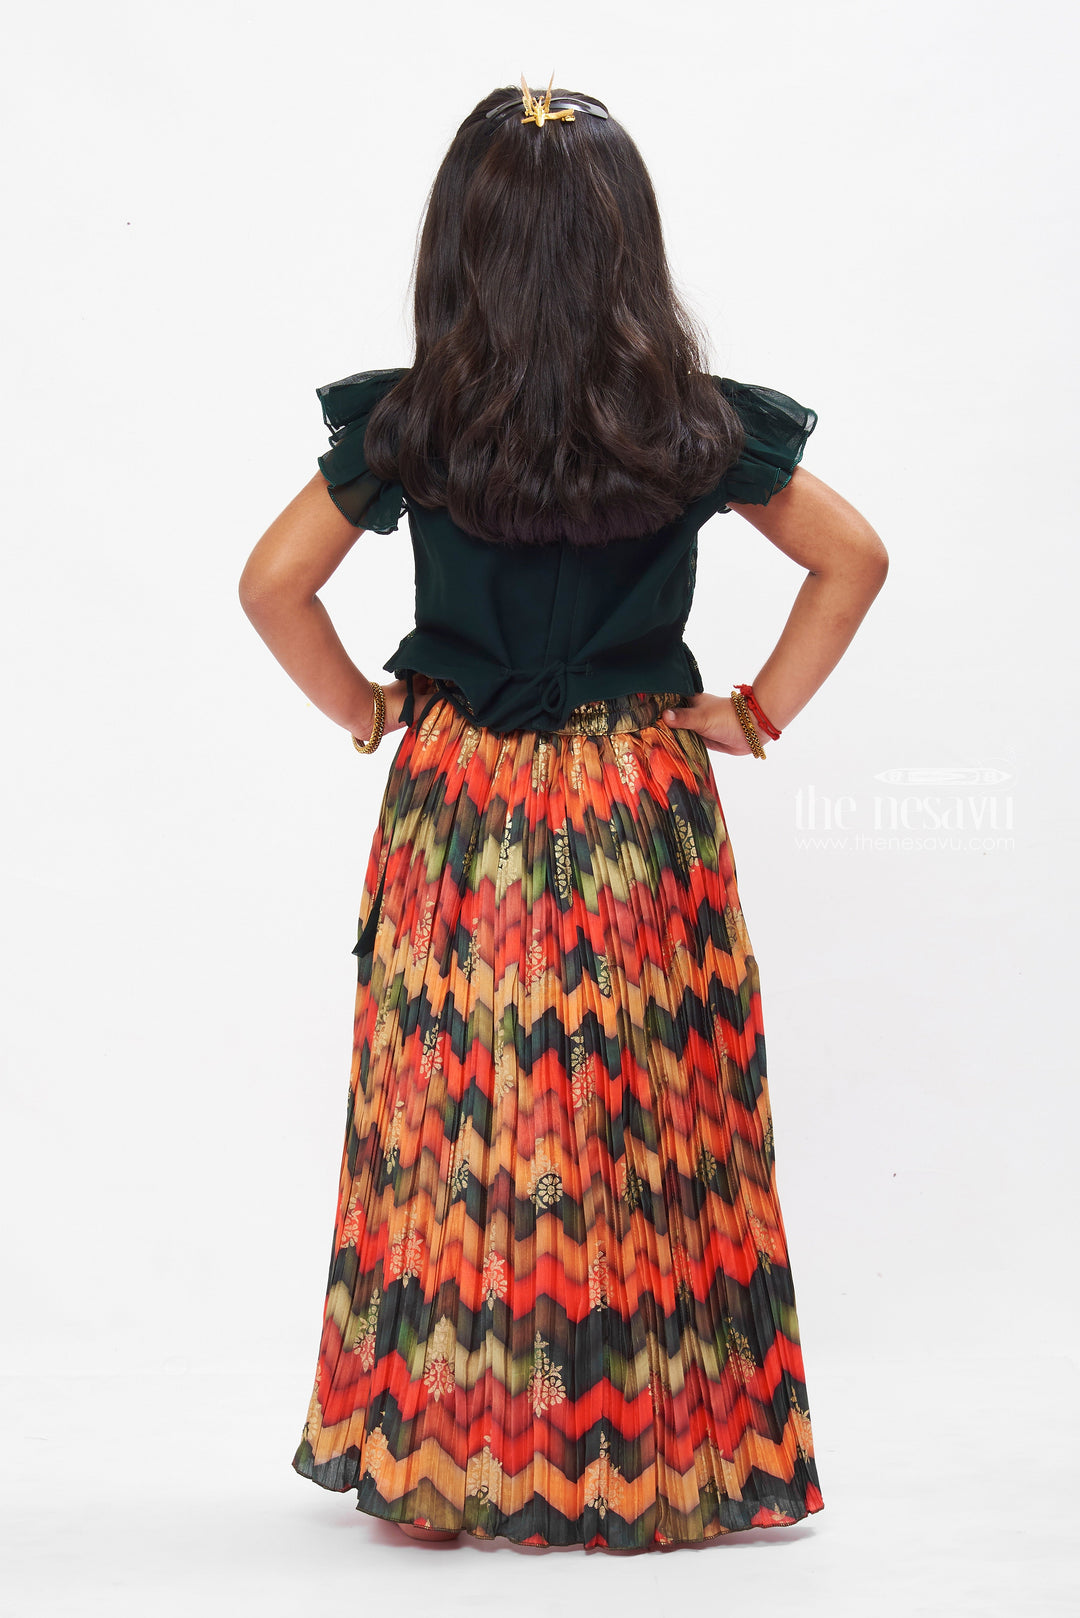 The Nesavu Girls Lehenga Choli Designer Embroidered Lehenga Choli in Green - Trendy Lehenga Designs for Girls Nesavu Buy Girls Green Lehenga Choli Online | Latest Branded Lehenga Designs | The Nesavu